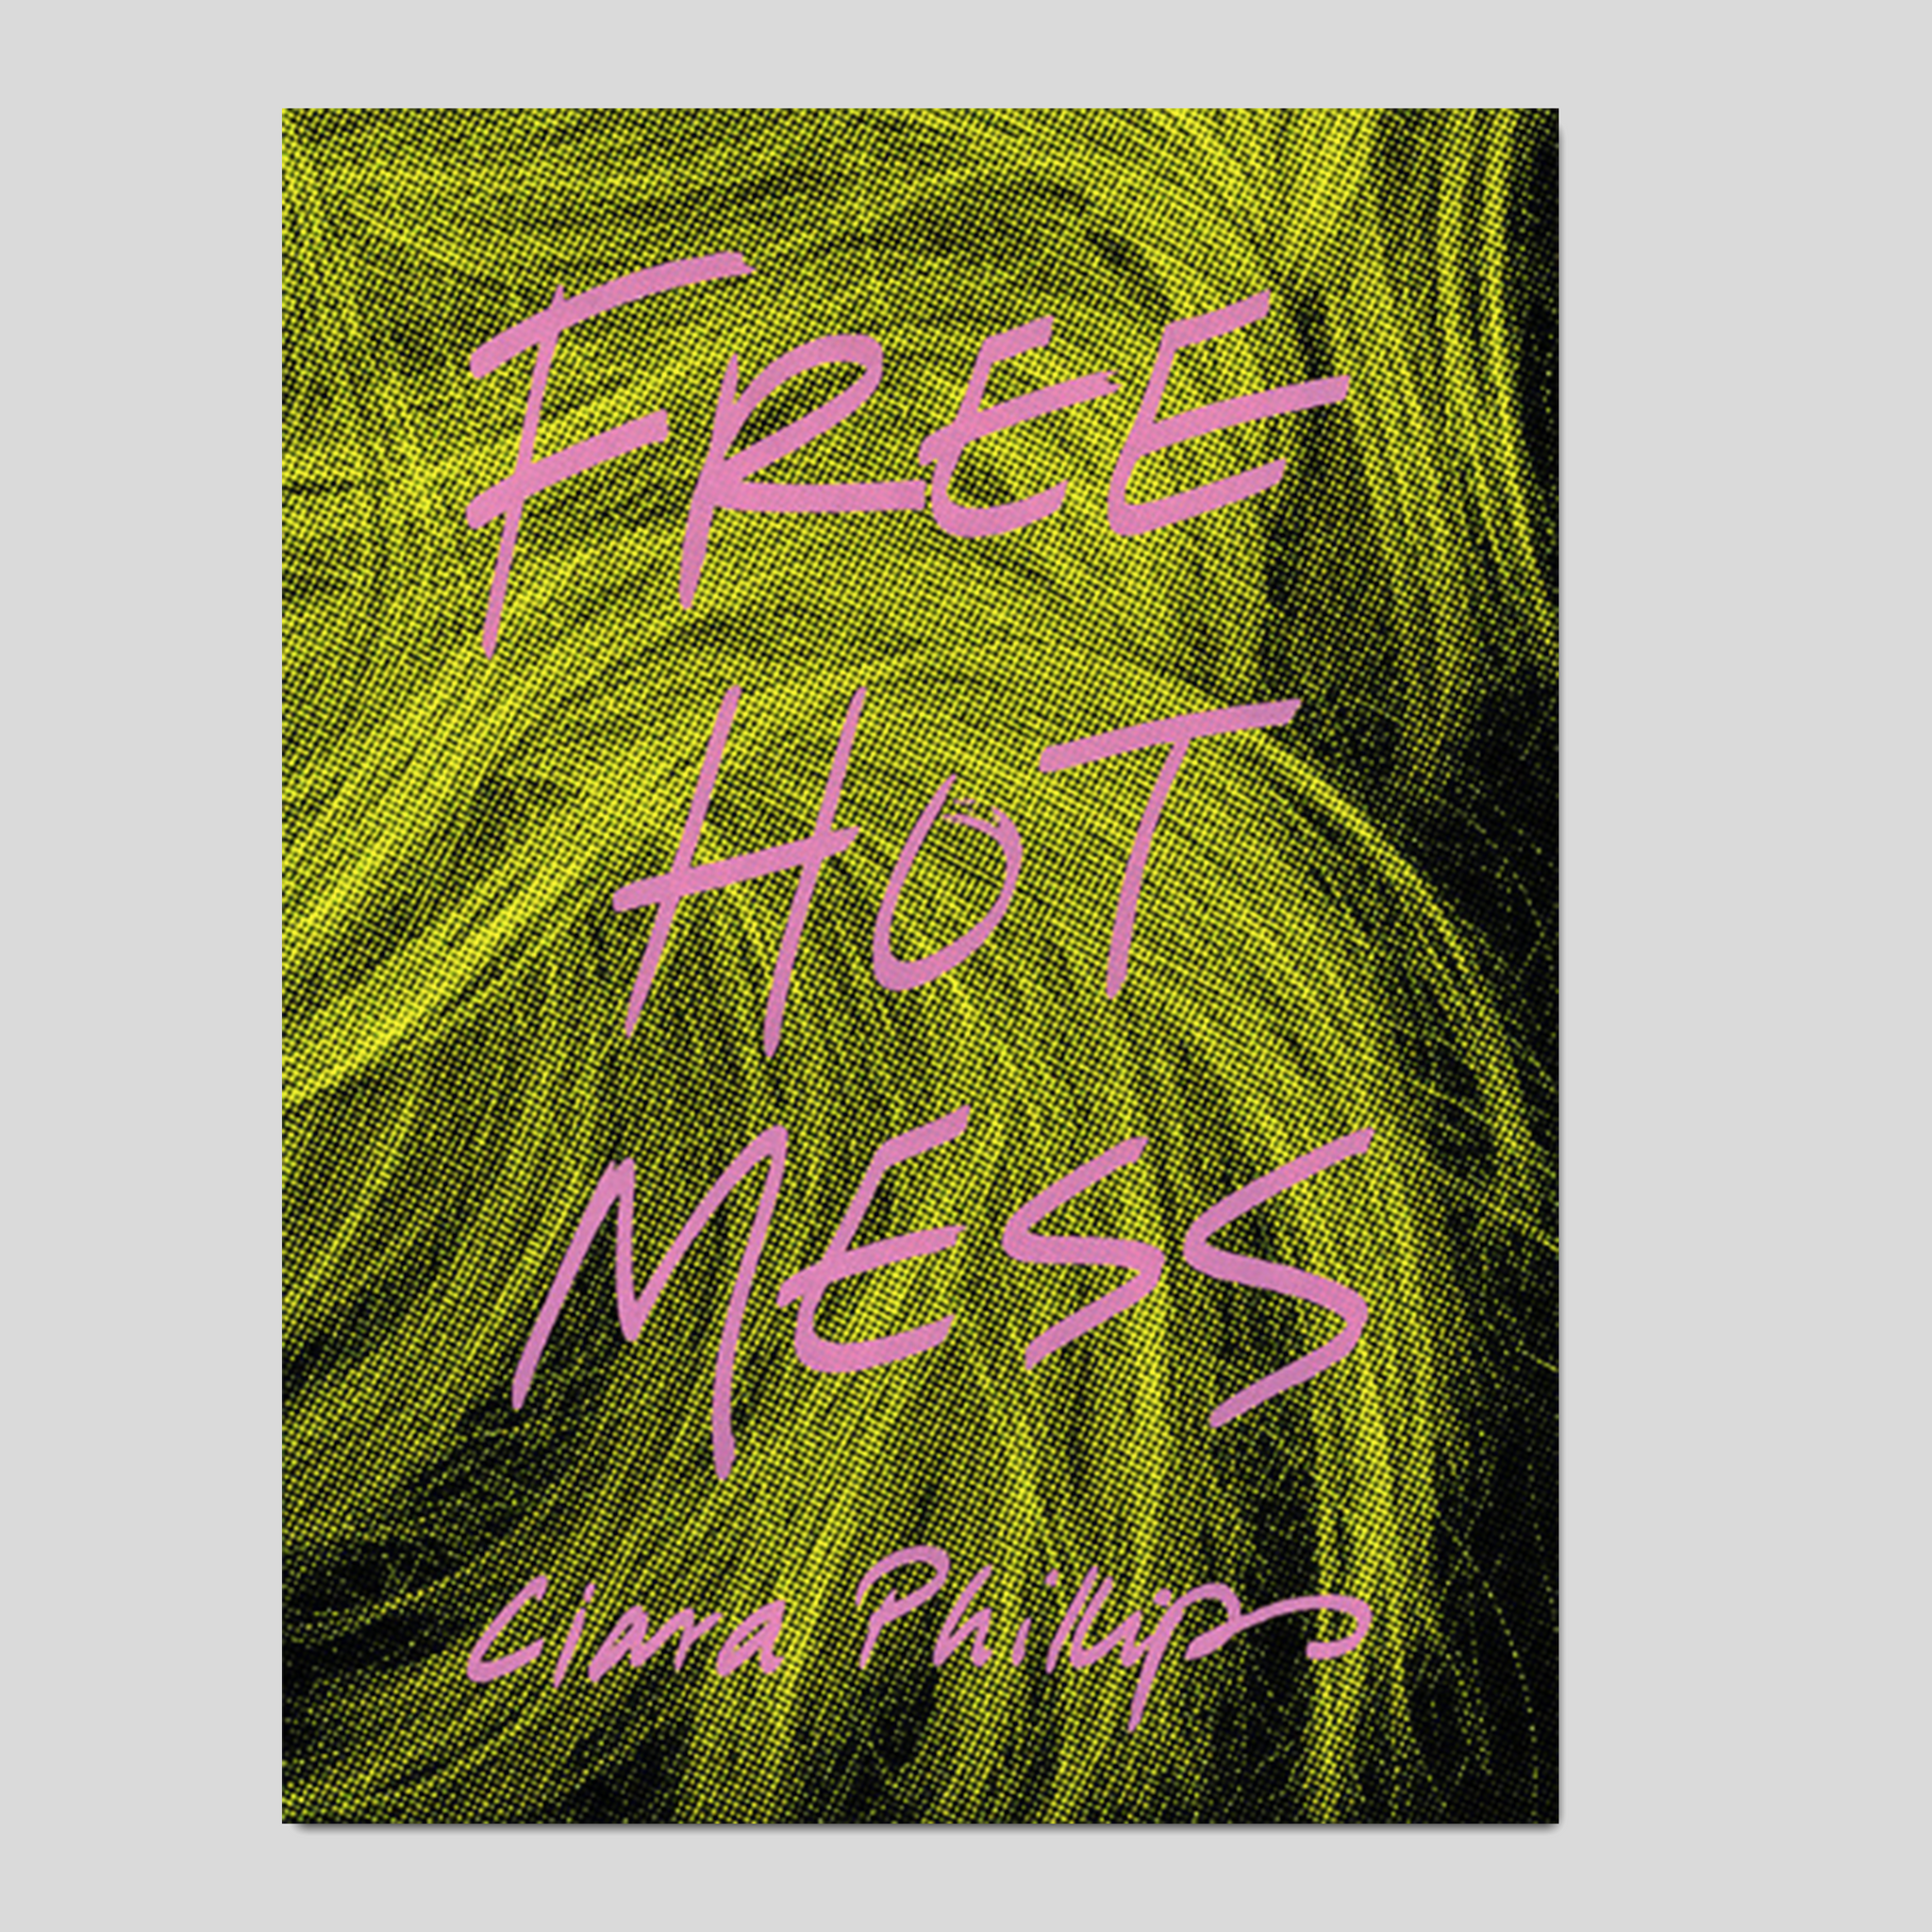 FREE HOT MESS - Ciara Phillips